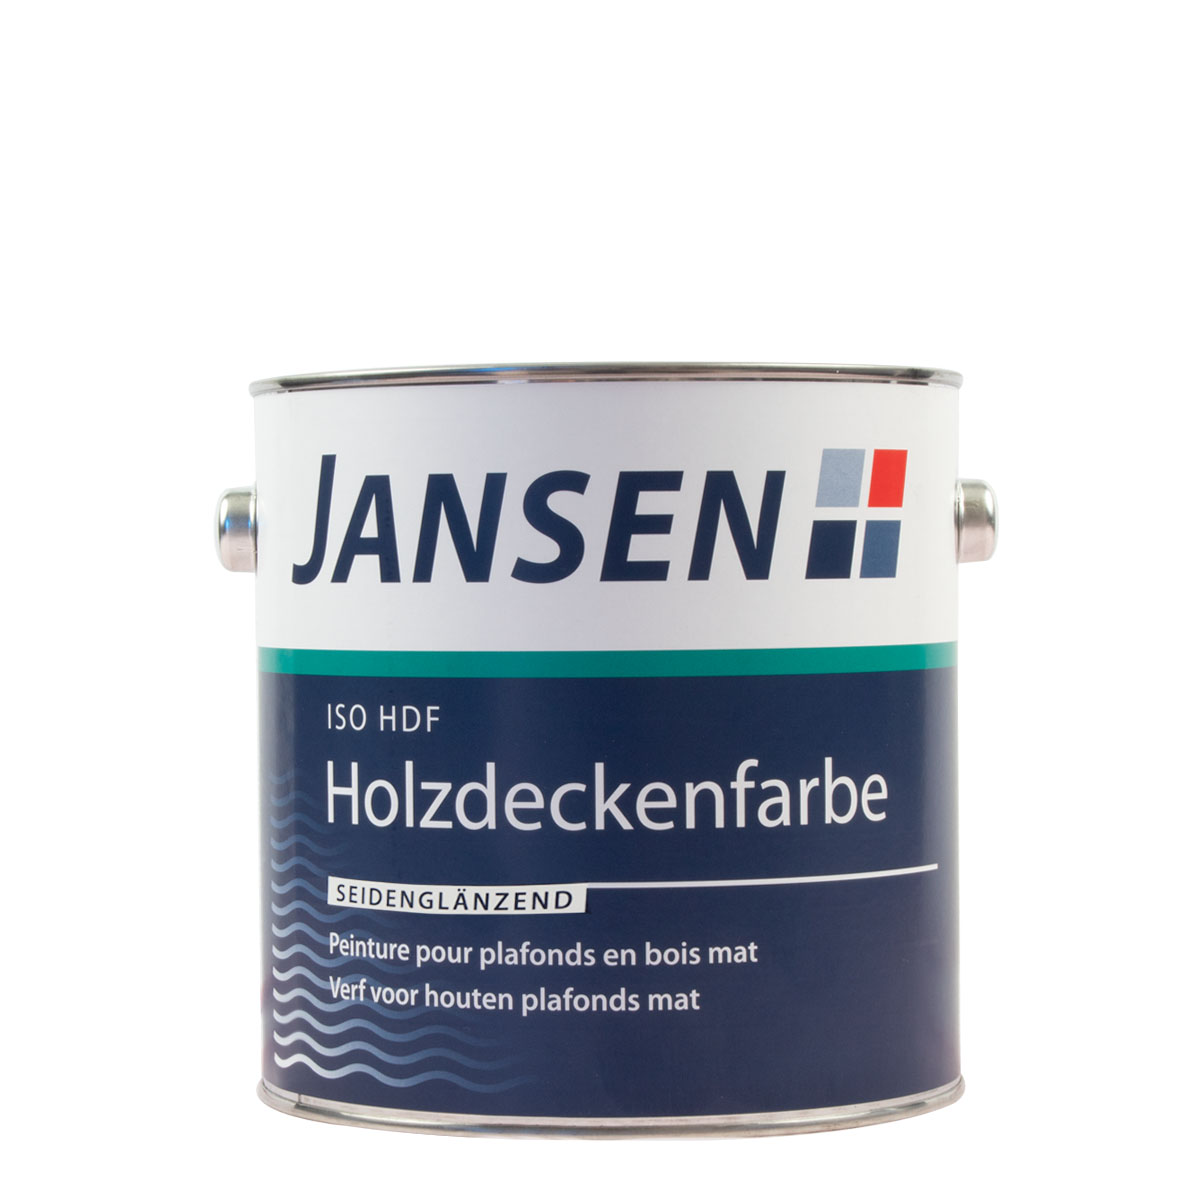 Jansen_ISOHDF_Holzdeckenfarbe_glaensend_gross